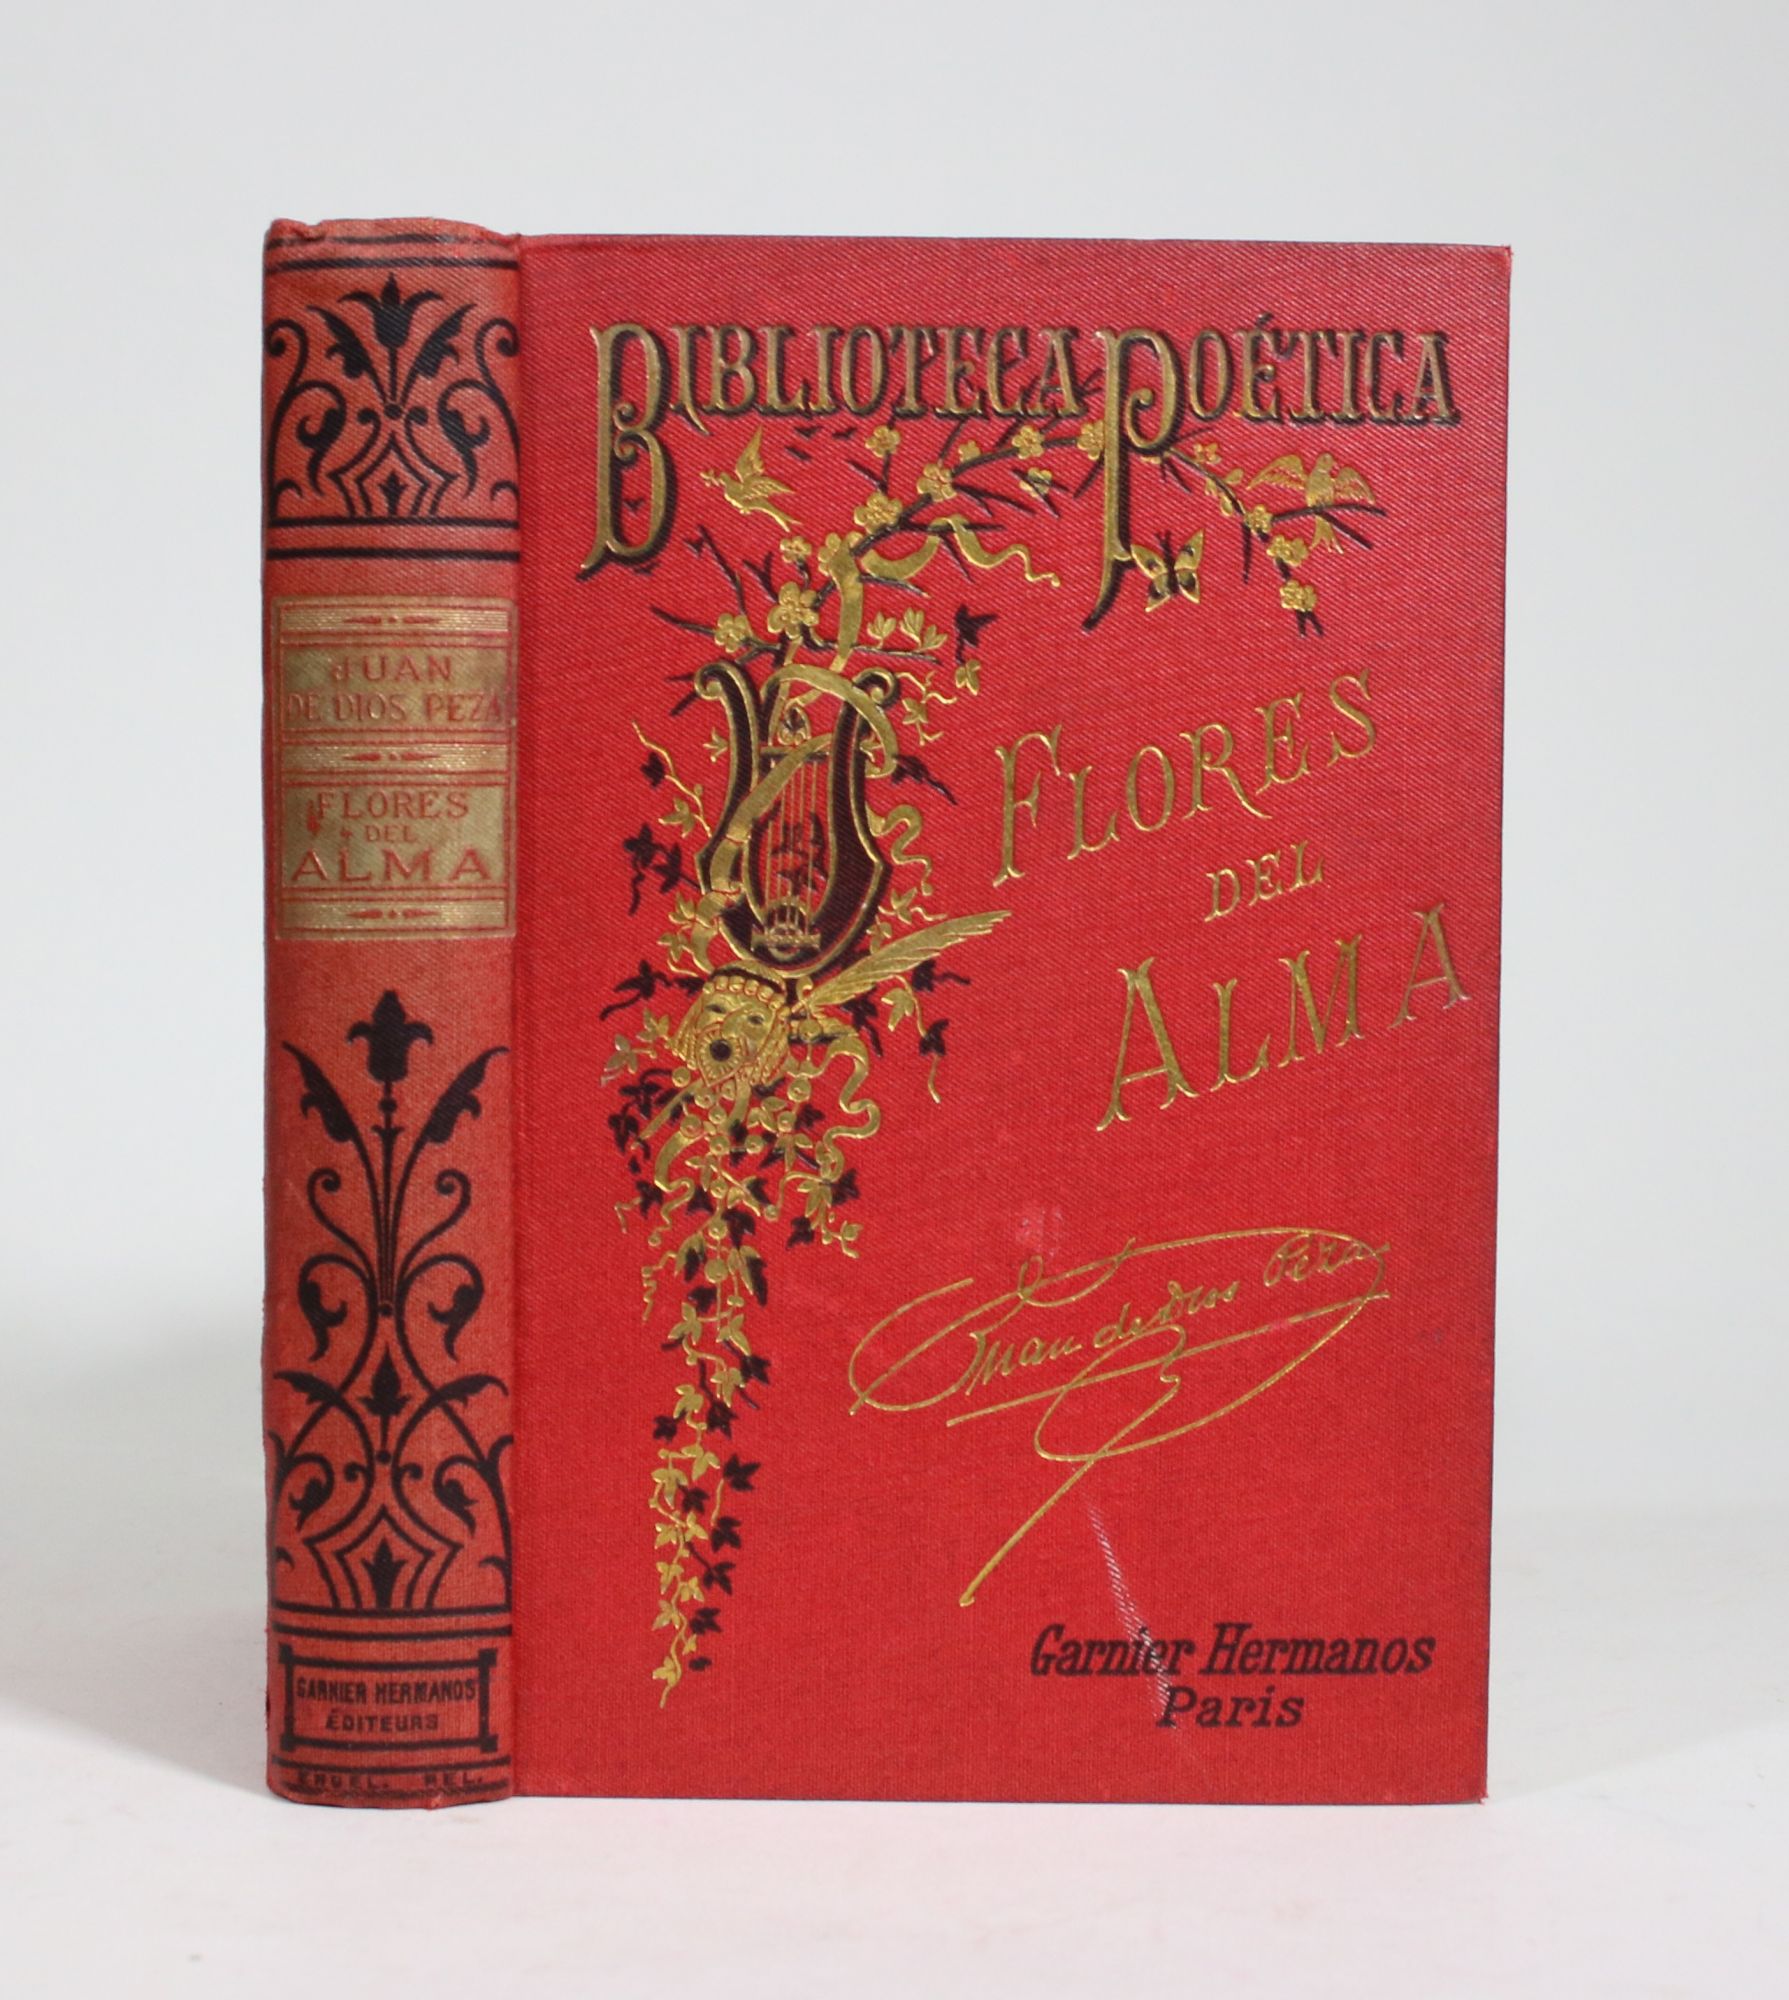 Poesias Completas de Juan de Dios Peza. Flores Del Alma Y Versos Festivos  by De Dios Peza, Juan: Very Good Hardcover | Minotavros Books, ABAC ILAB